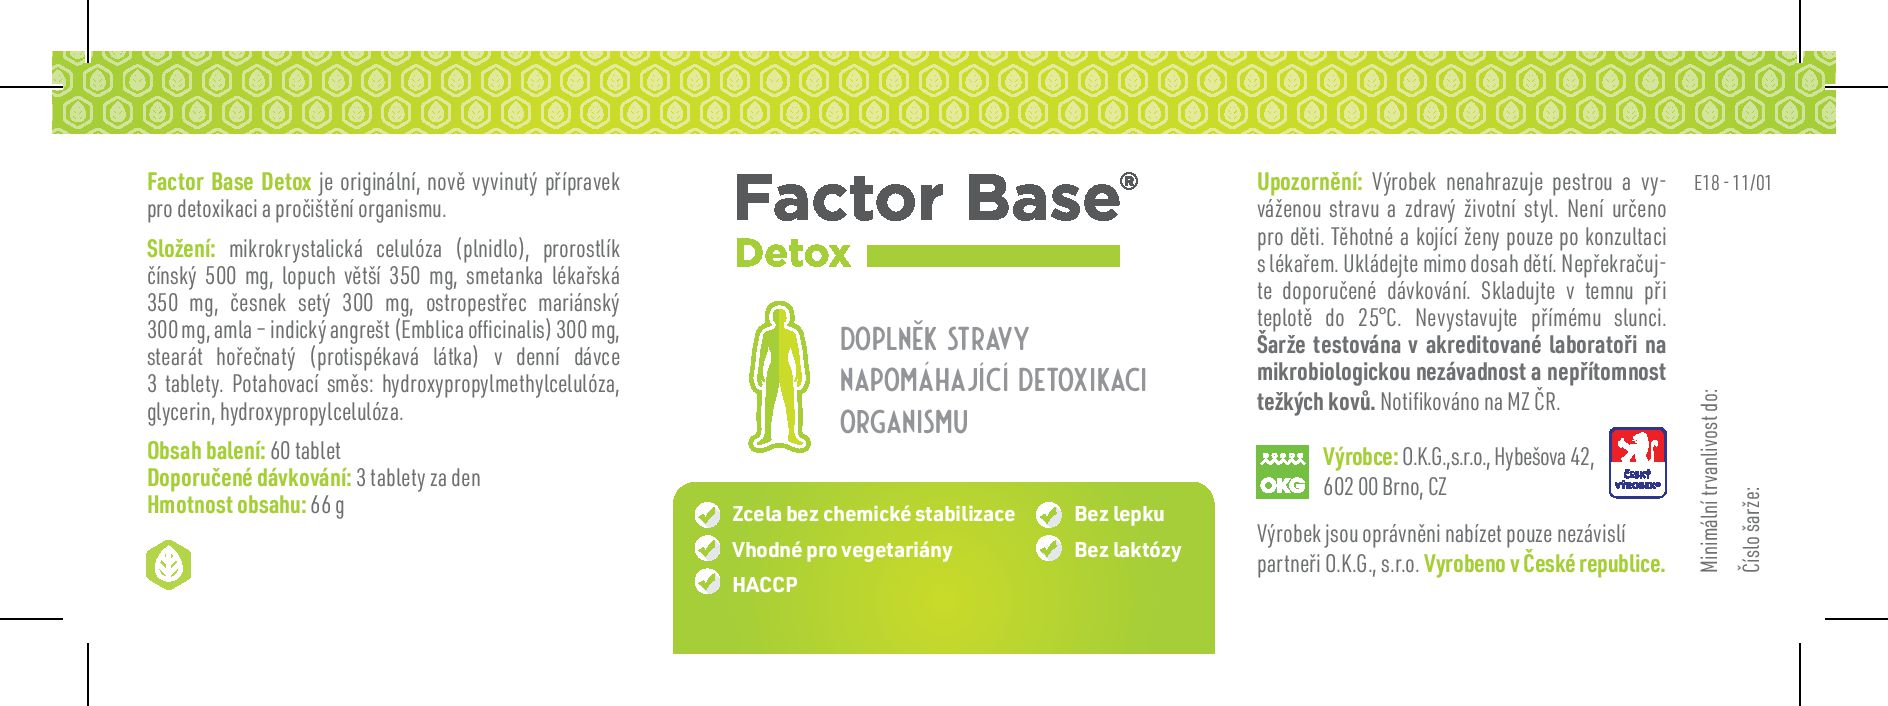 etiketa factor Base Detox